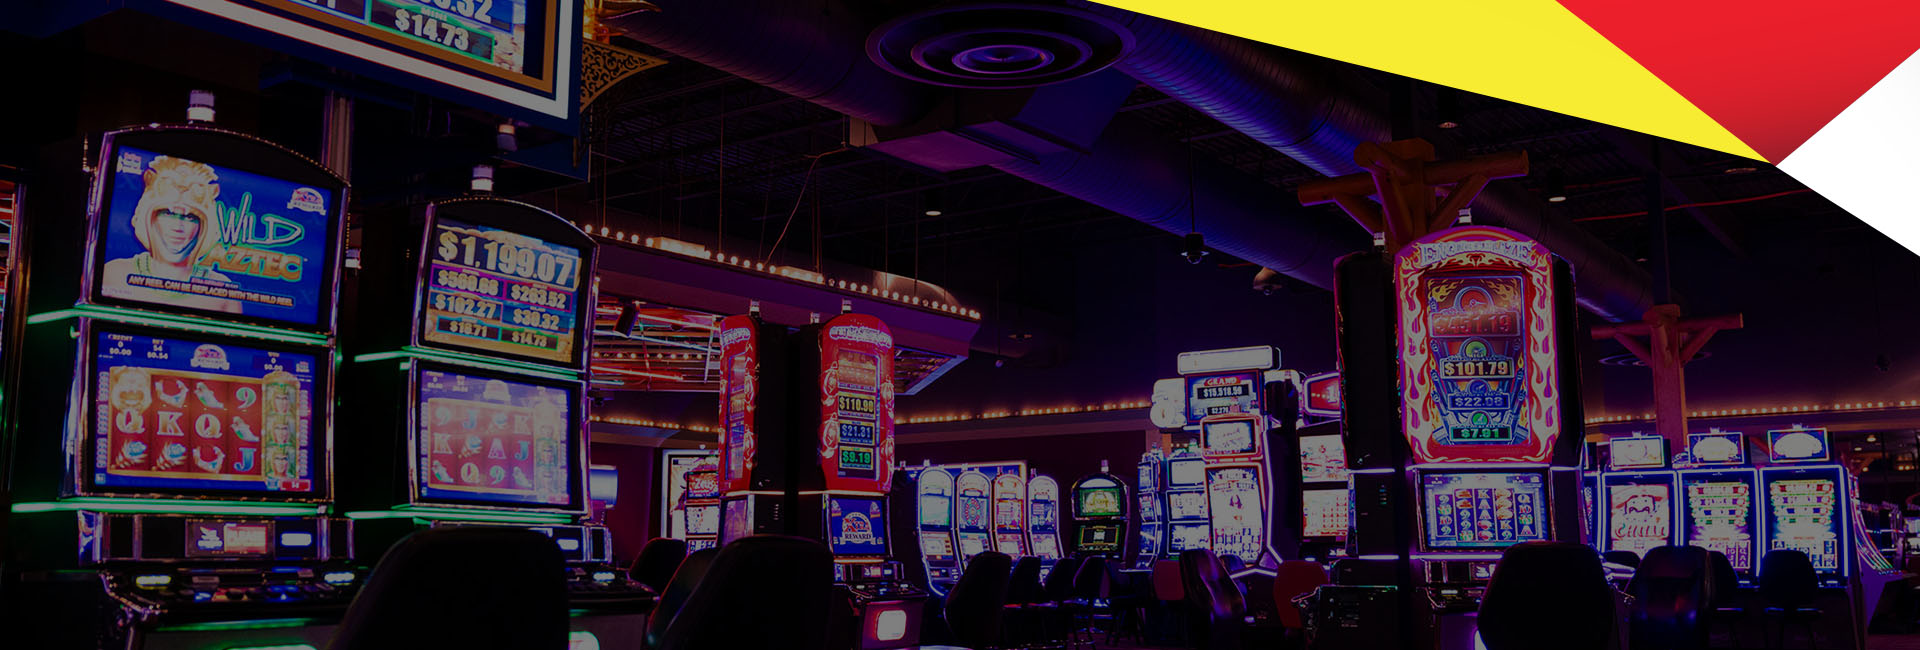 Juegos gratis de casino slot